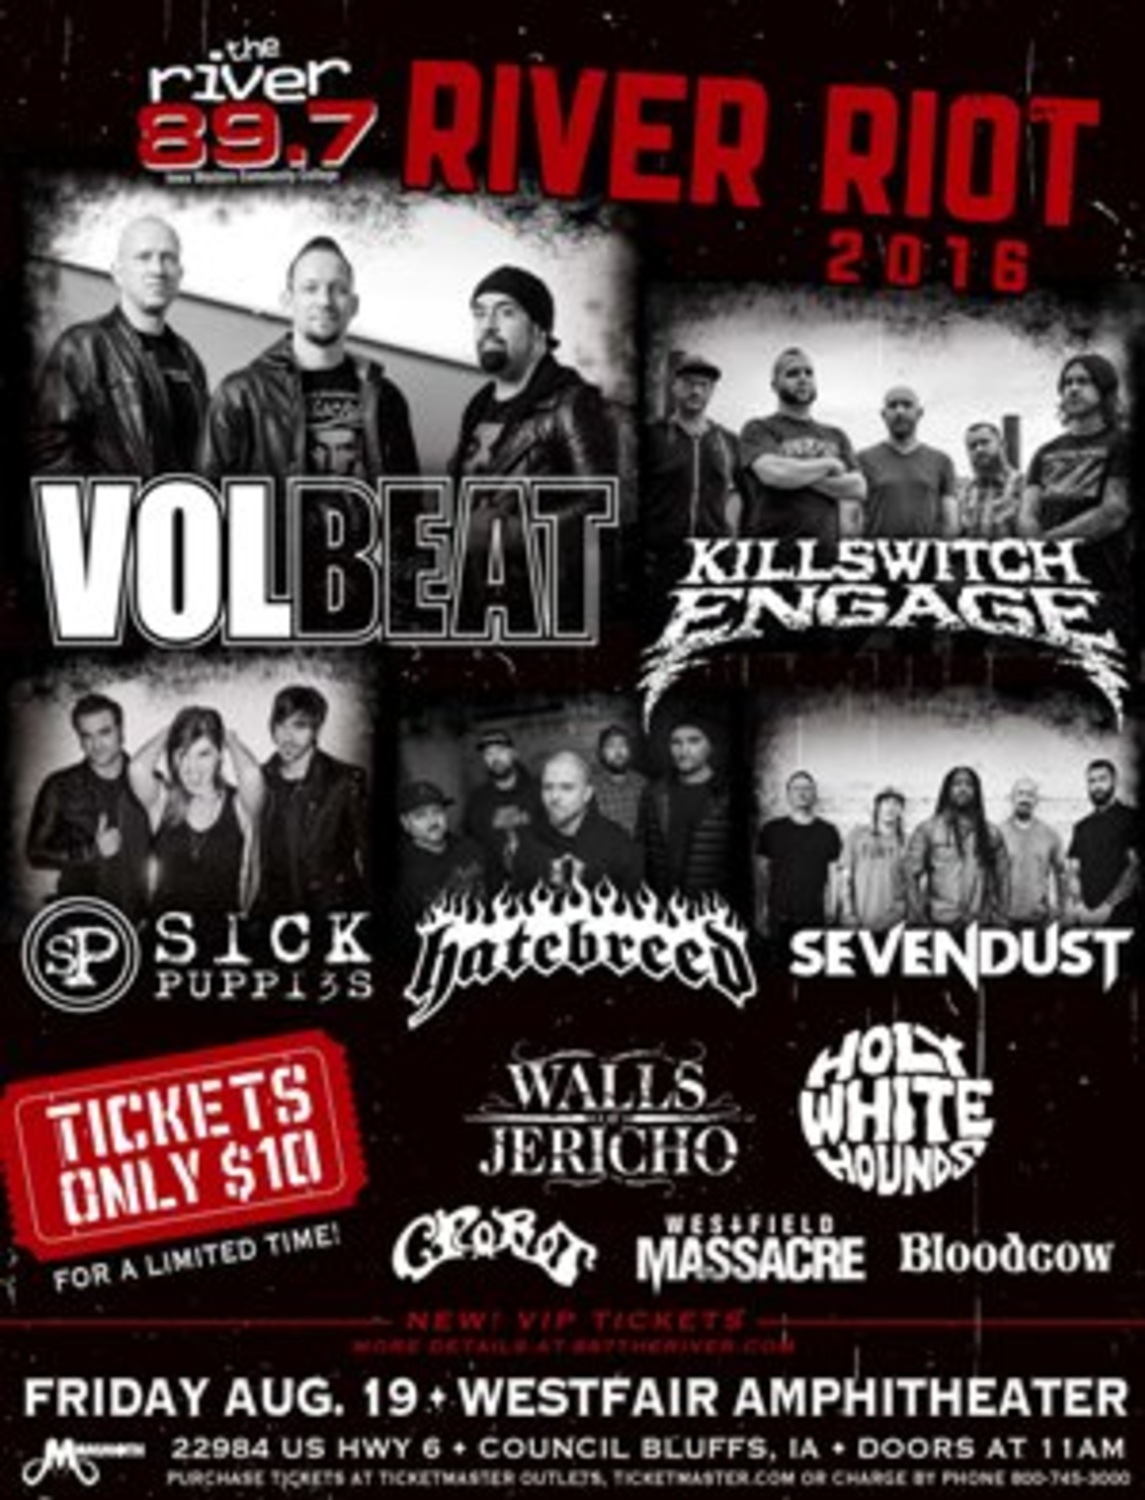 Volbeat News River Riot 2016